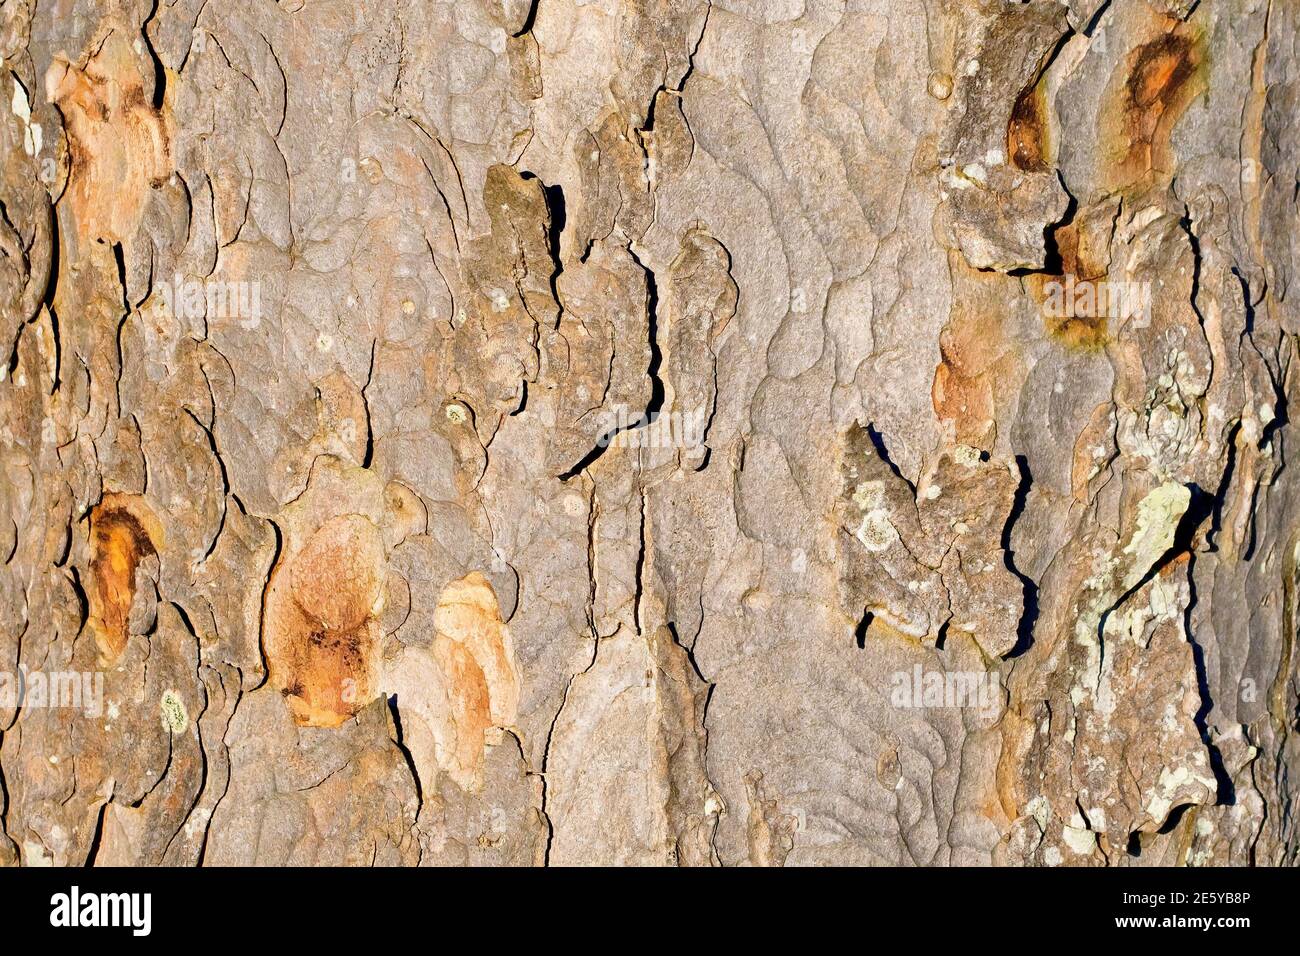 Sycamore (acer pseudoplatanus), Nahaufnahme, die die Textur der gebrochenen und abblätternden Rinde des Baumes zeigt. Stockfoto